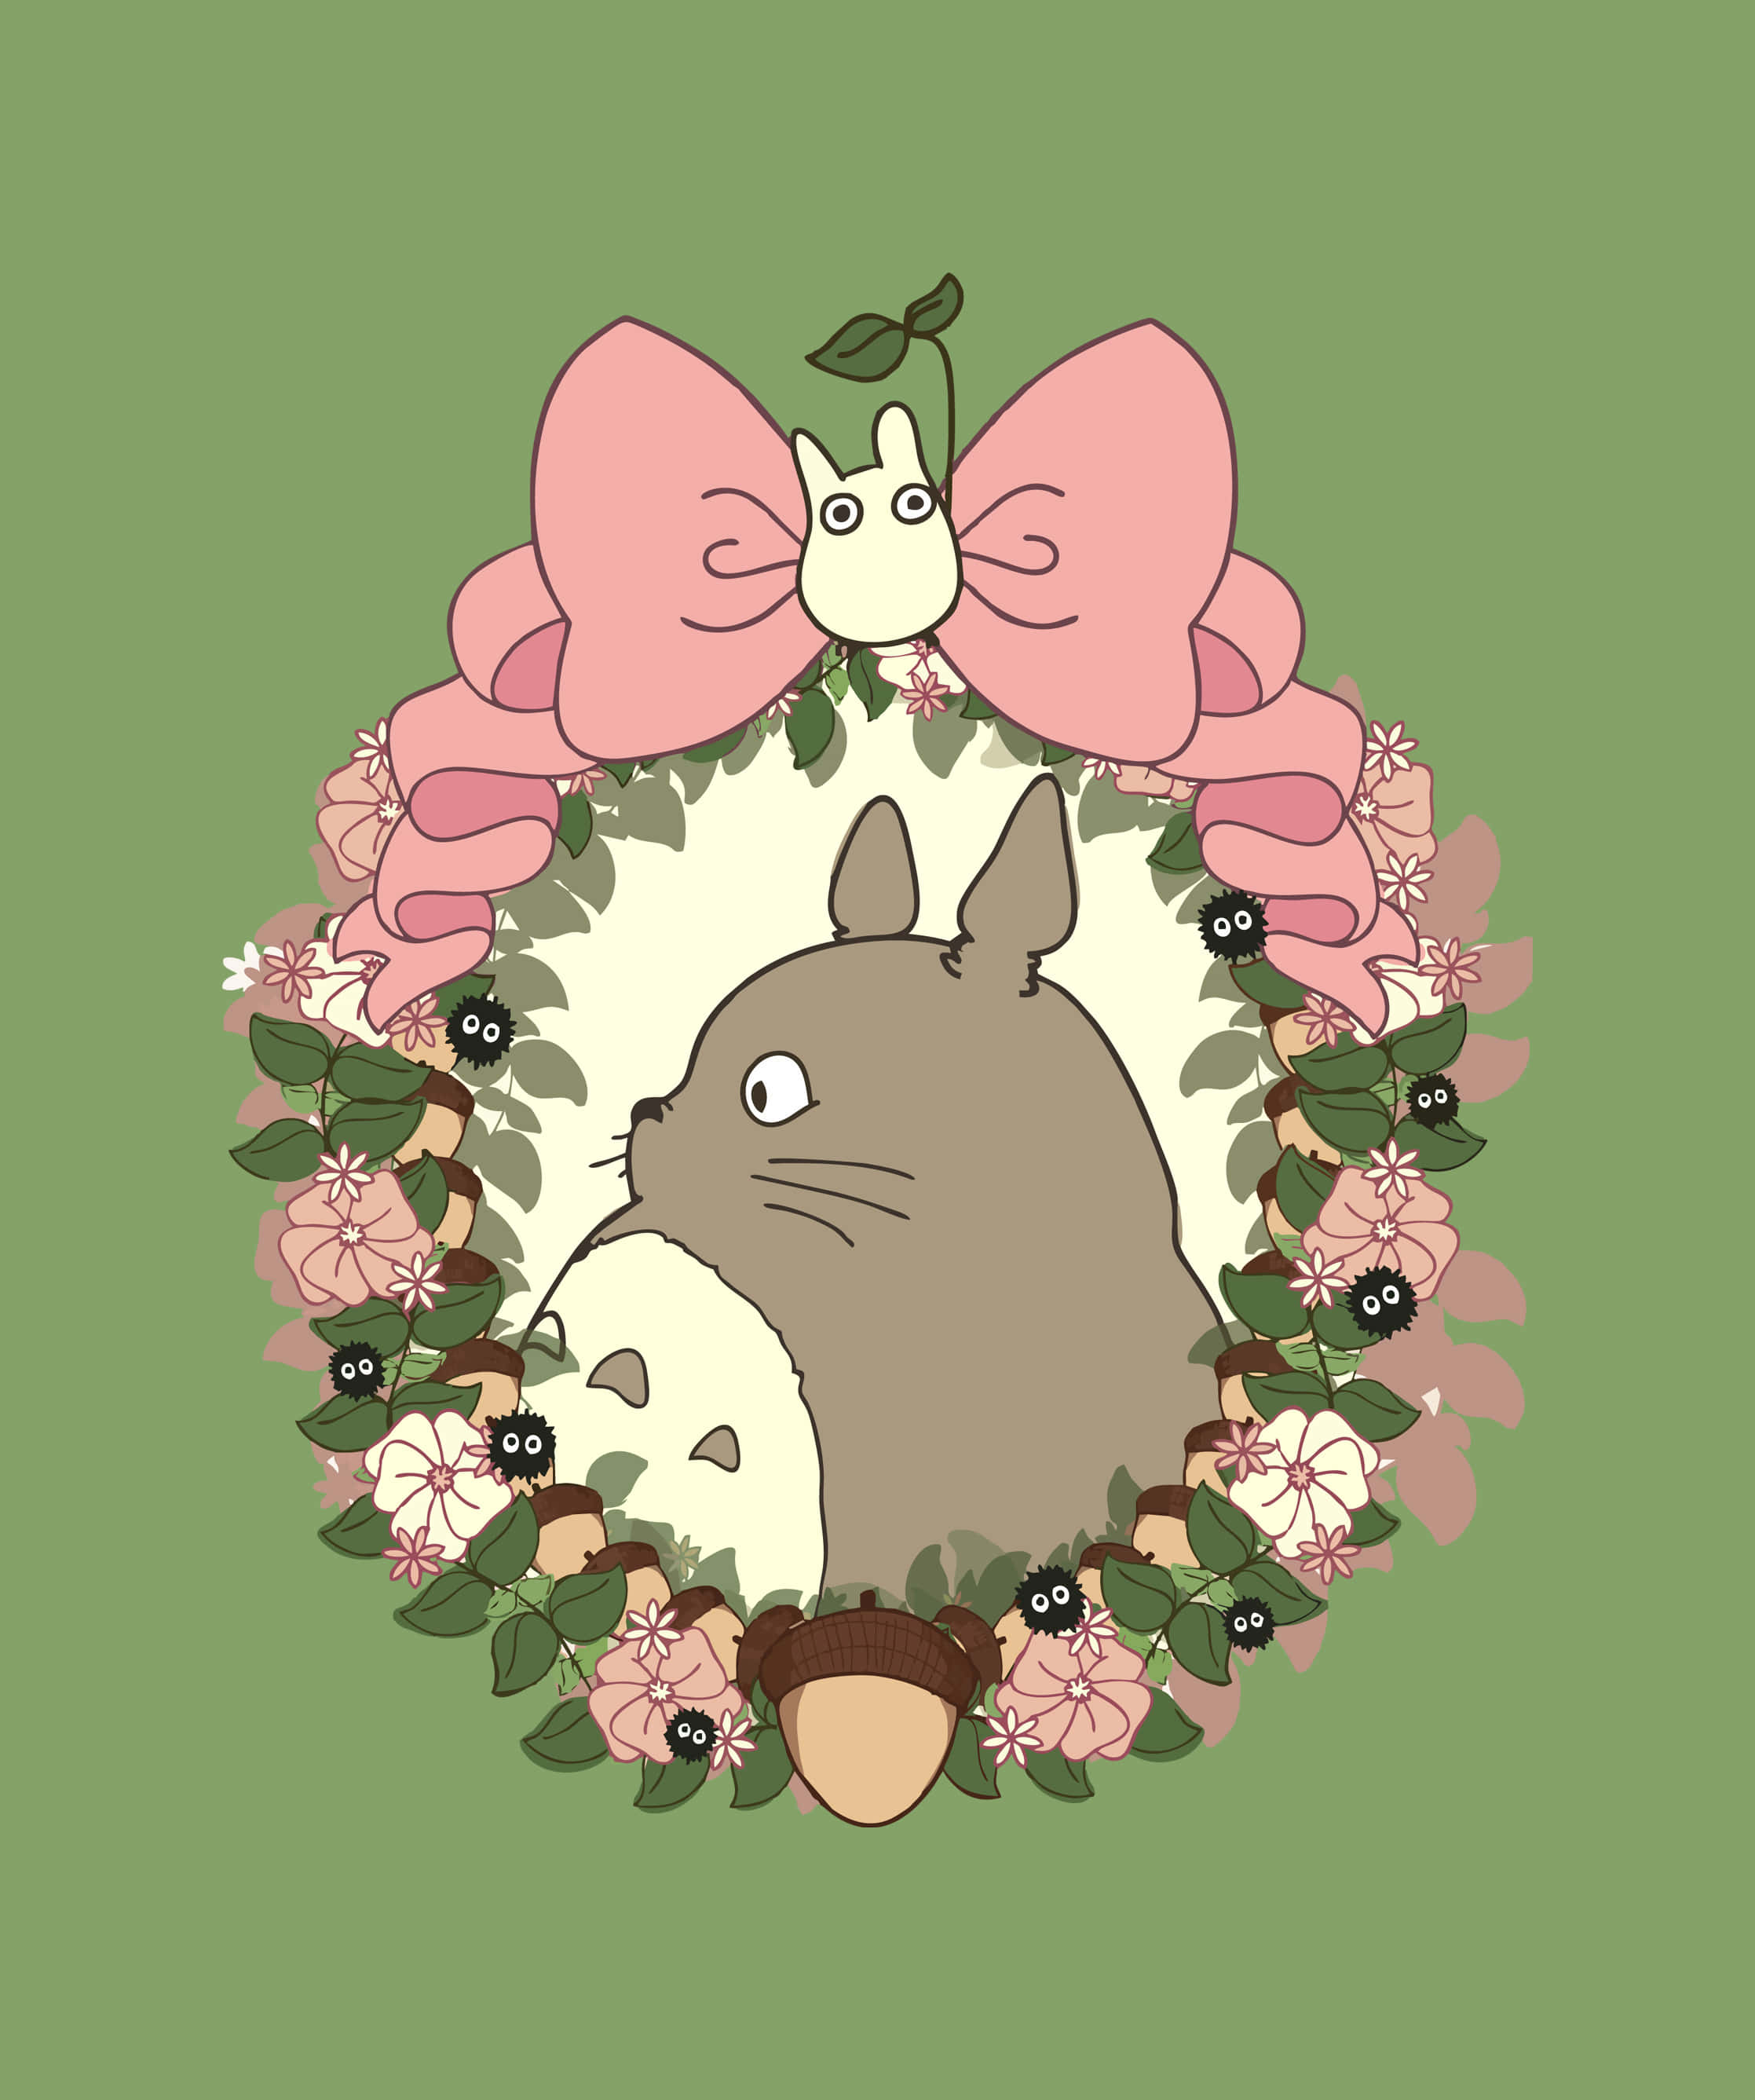 Totoro,el Amado Espíritu Del Bosque De La Clásica Película De Studio Ghibli